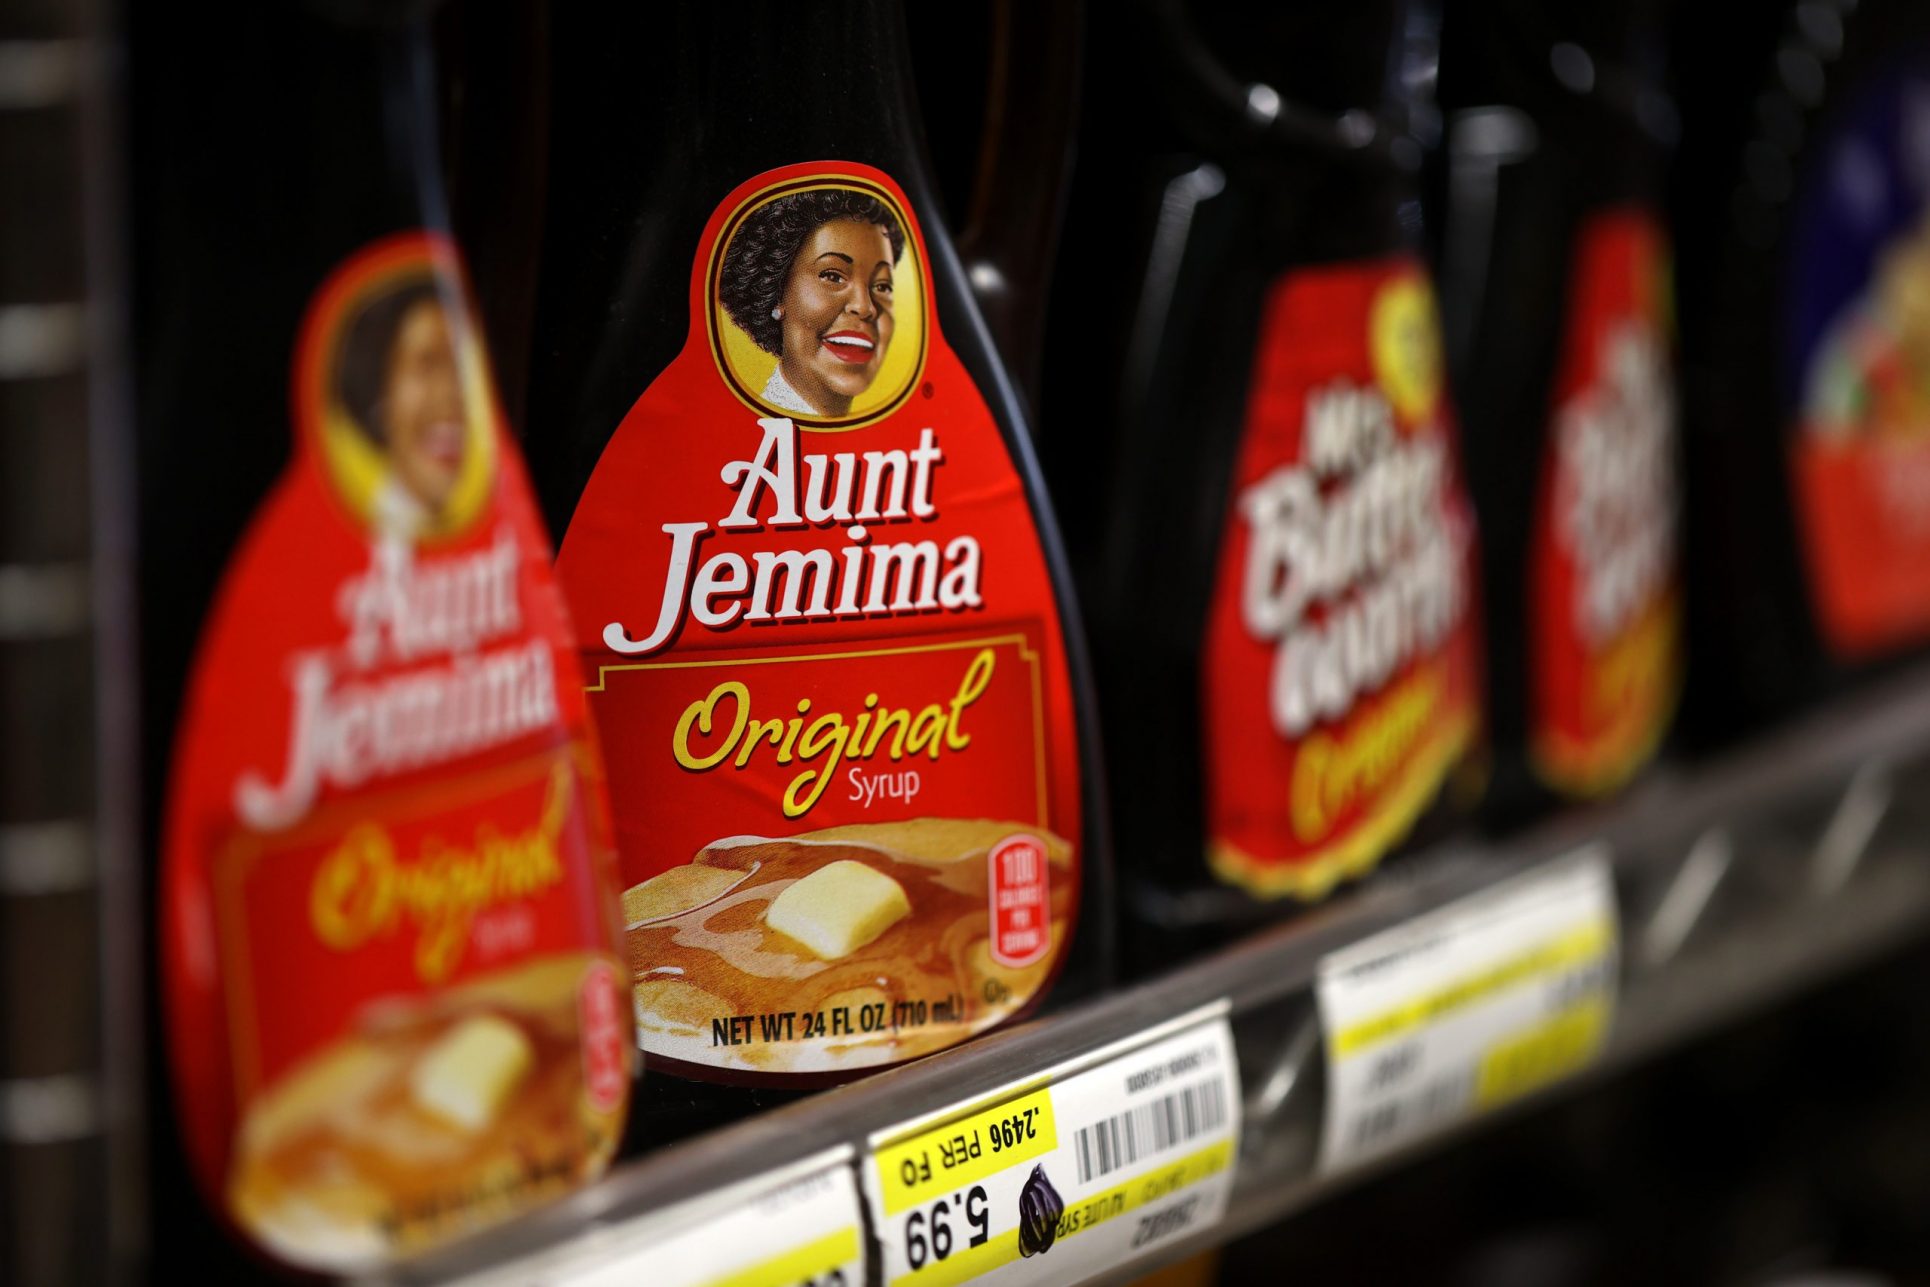 PepsiCo retirará marca e imagen de Aunt Jemima al reconocer su pasado racista